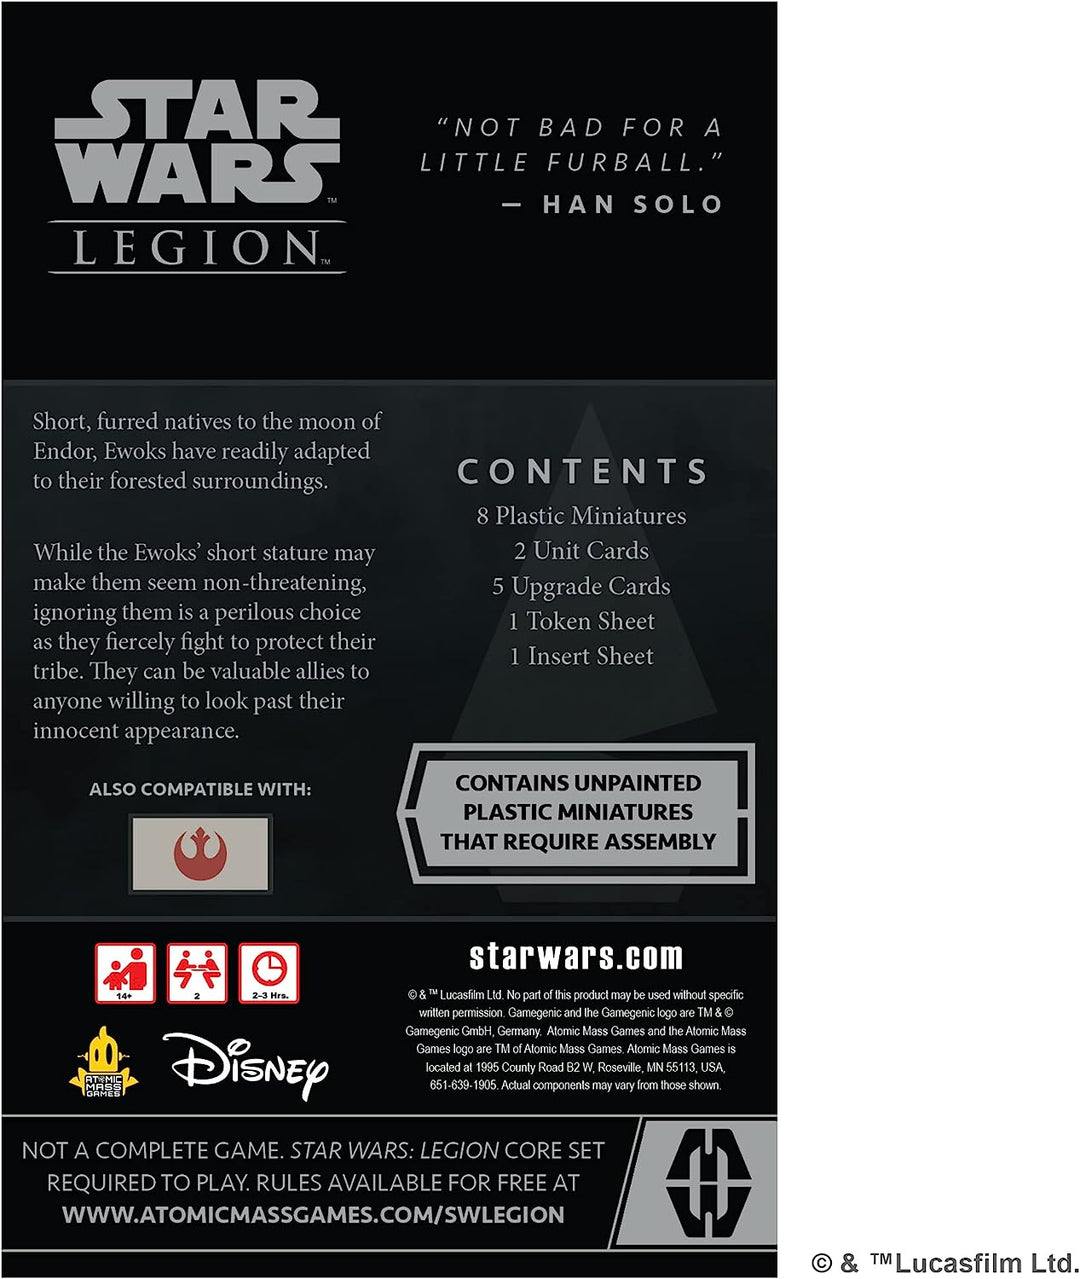 Star Wars Legion: Einheit der Ewok-Krieger